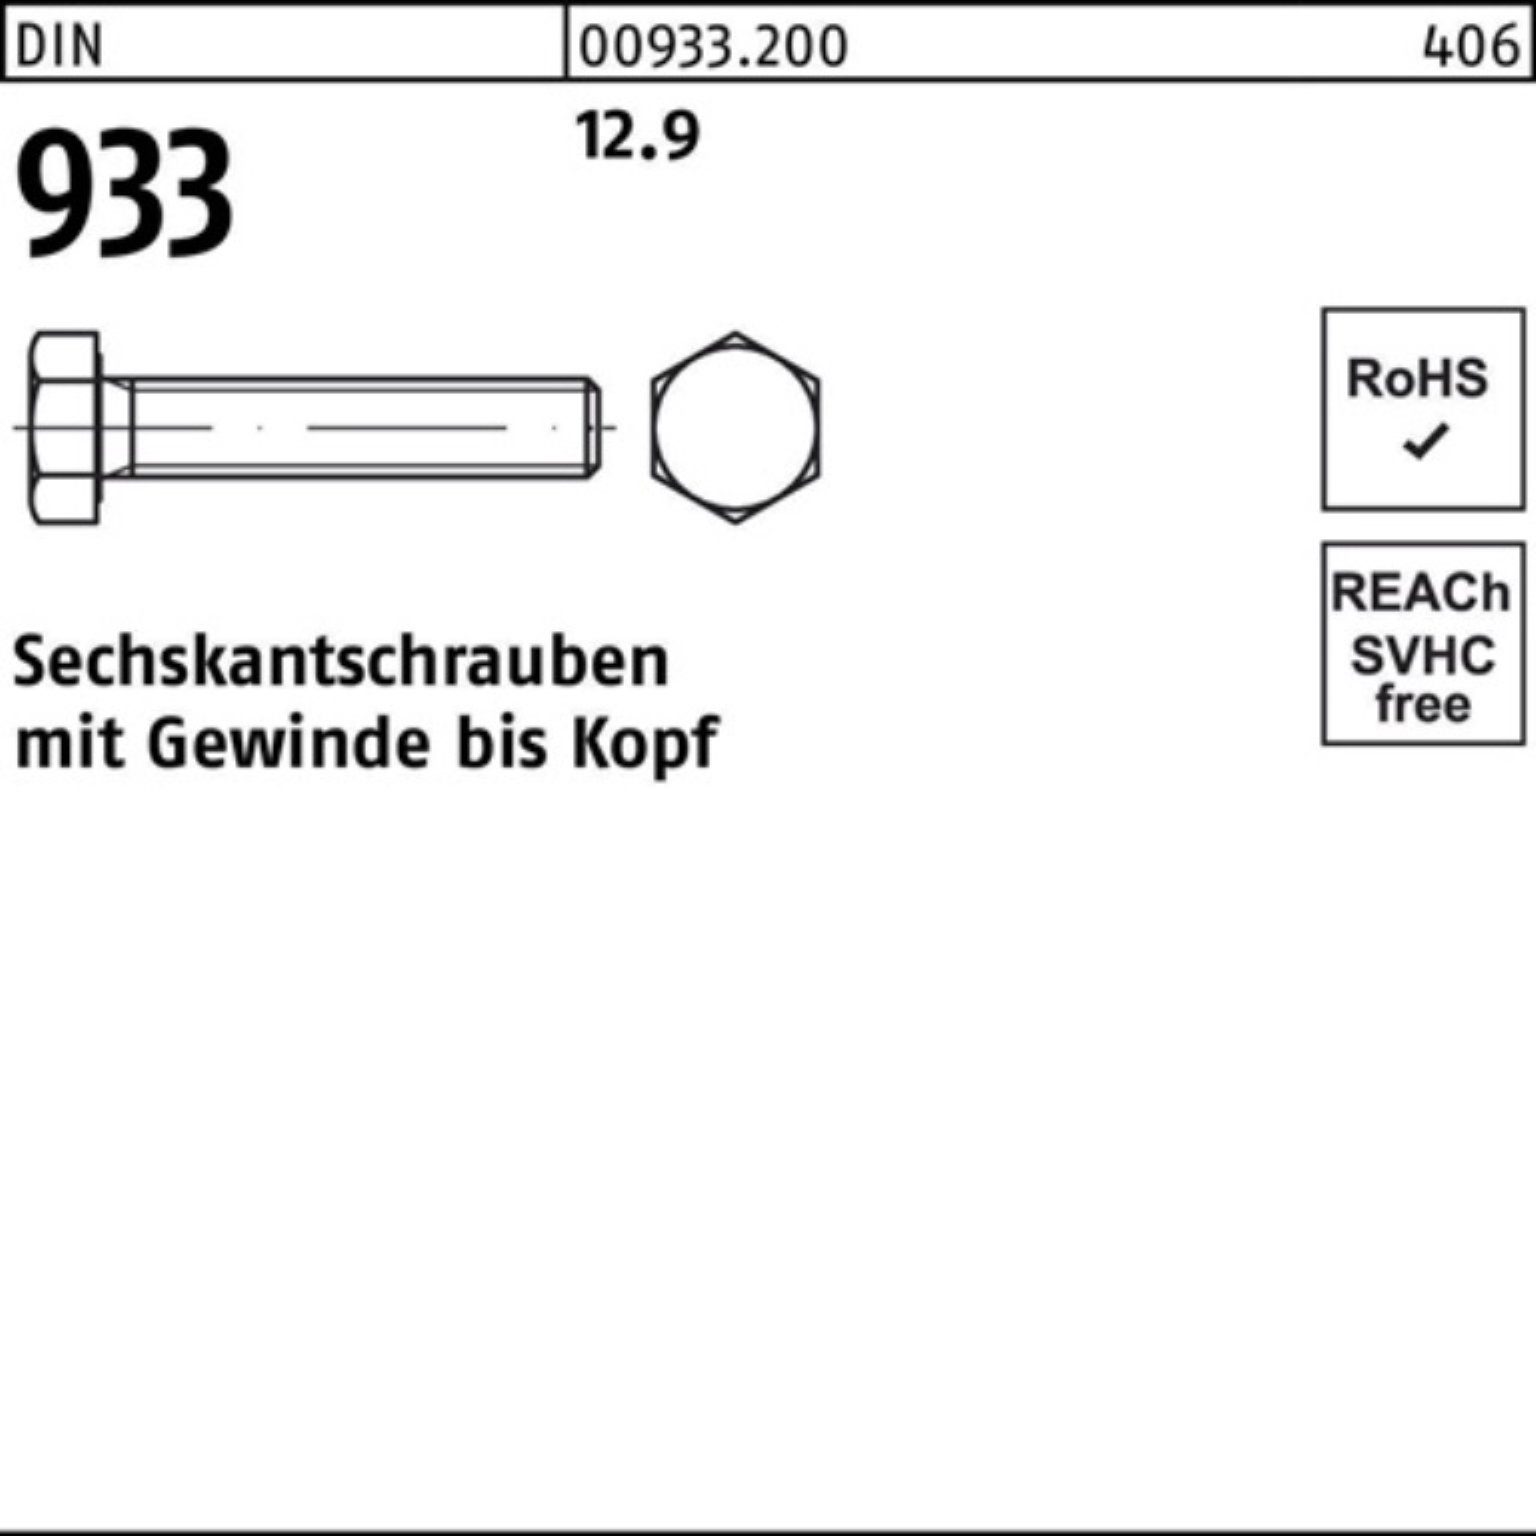 Reyher Sechskantschraube 100er 93 100 DIN VG Pack 45 M10x Sechskantschraube 933 Stück DIN 12.9